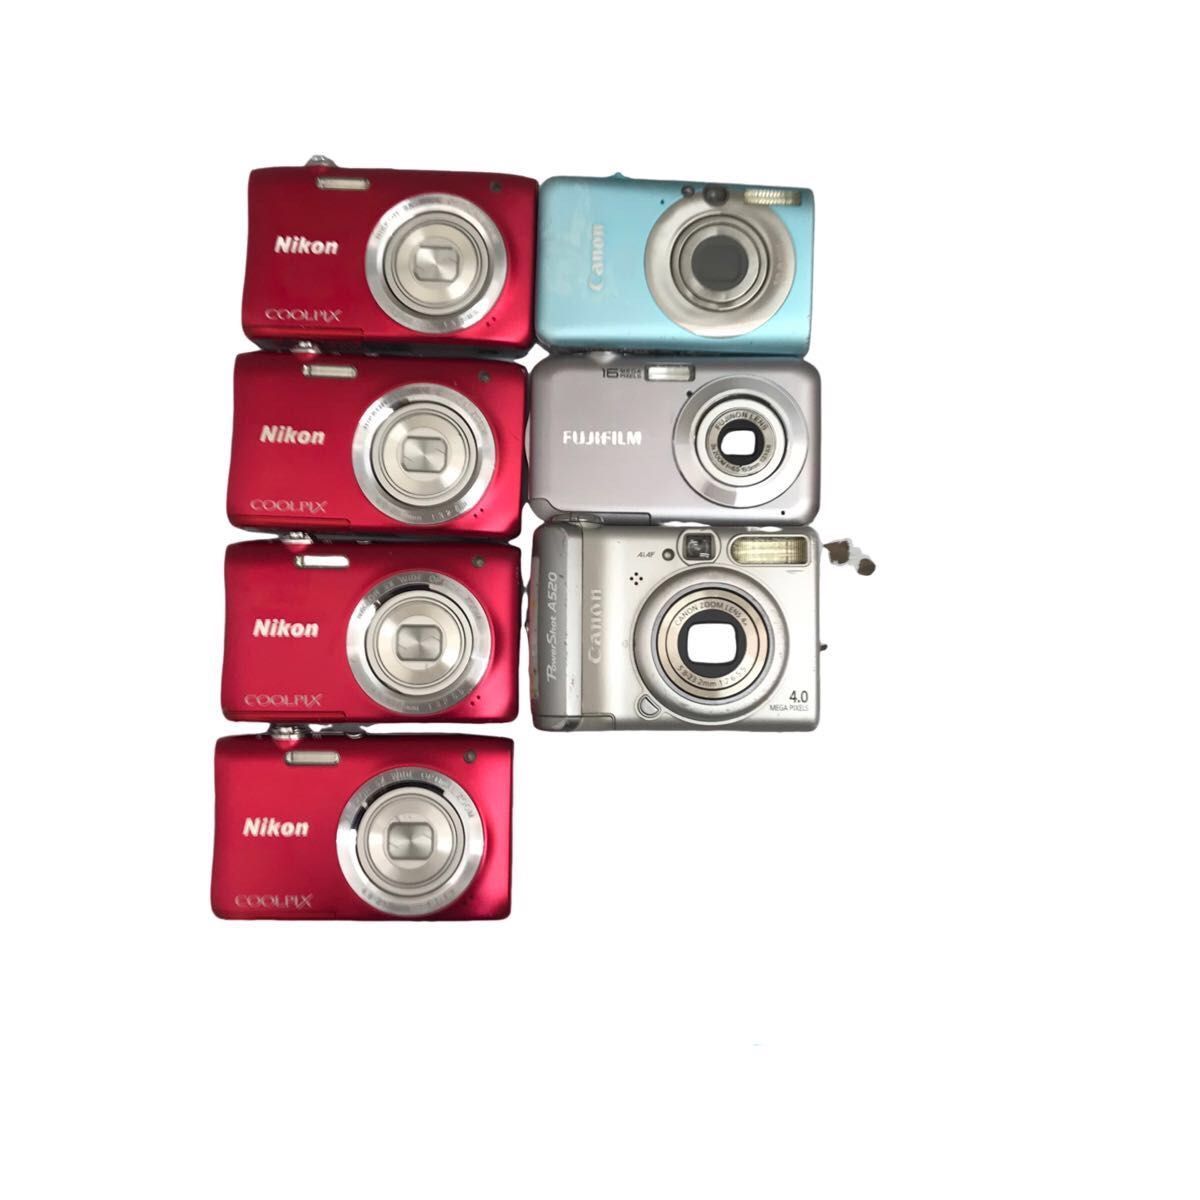 171【ジャンク品】Canon (乾電池タイプ) Nikon FUJIFILM デジタルカメラ 6台セット